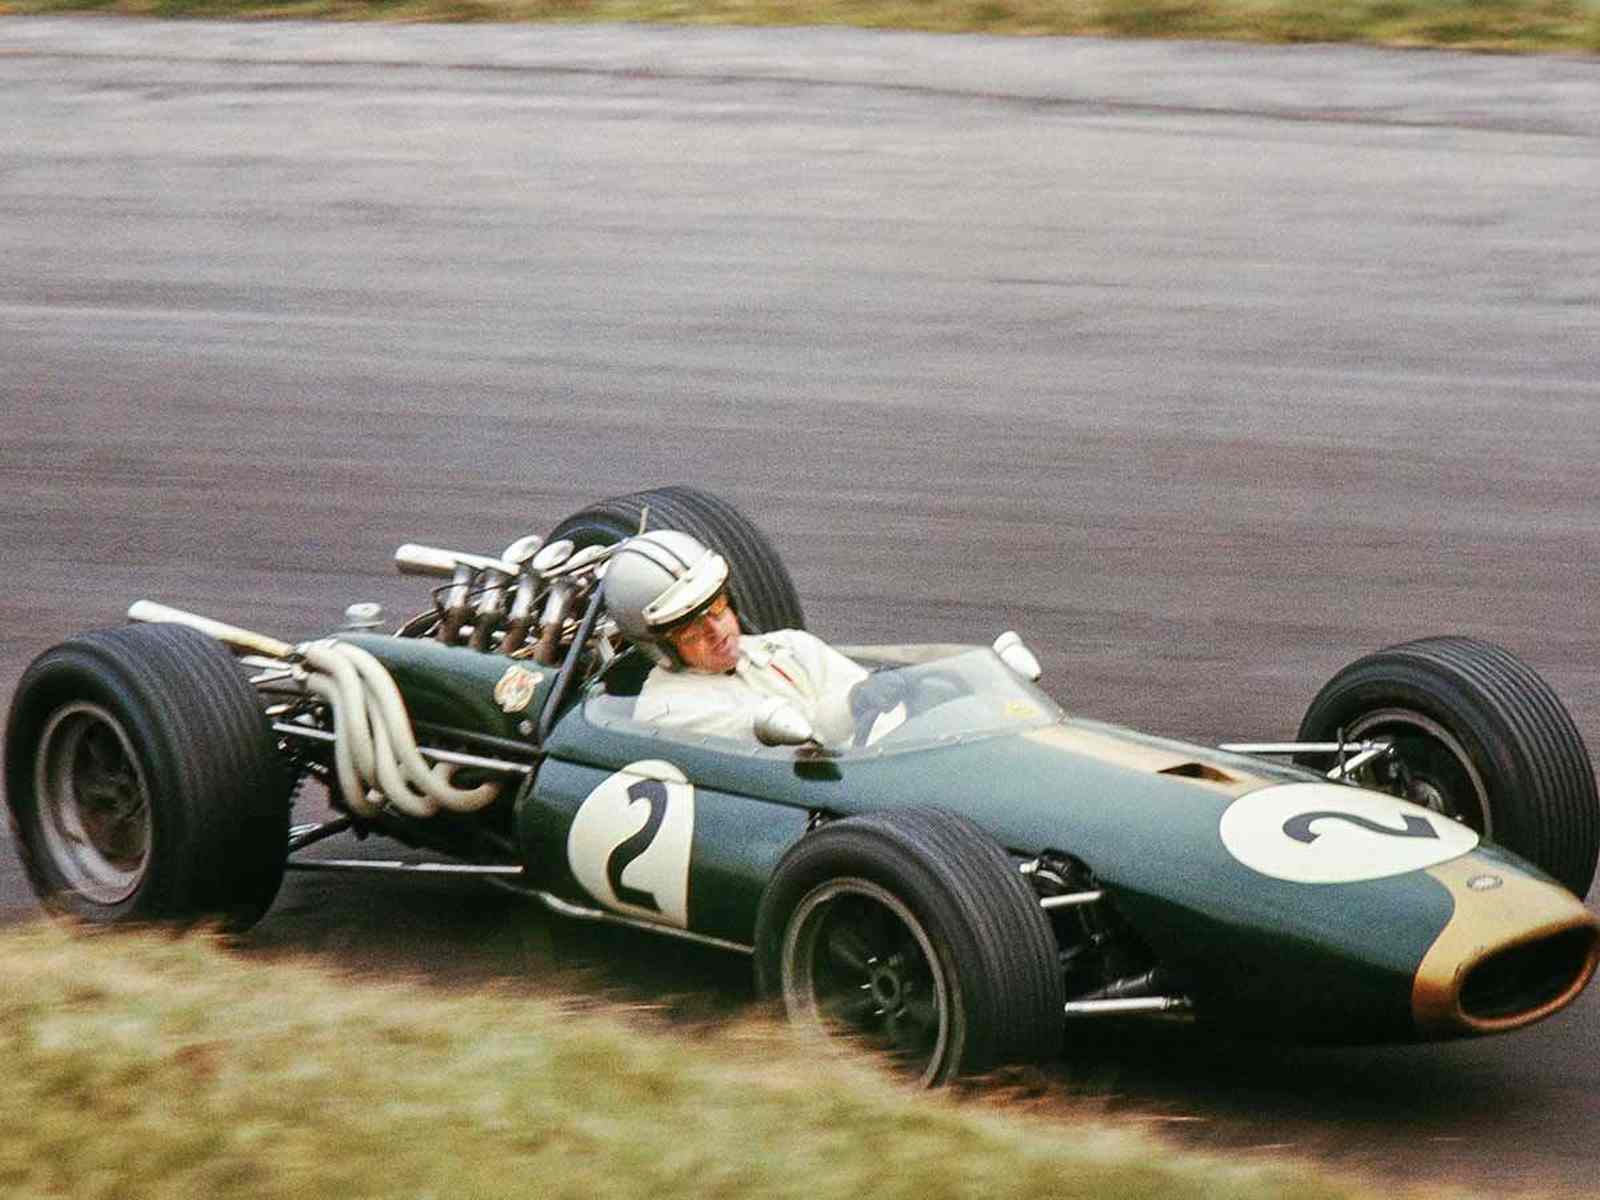 O neozelandês Denny Hulme, com a Brabham, conquistou o título de 1967